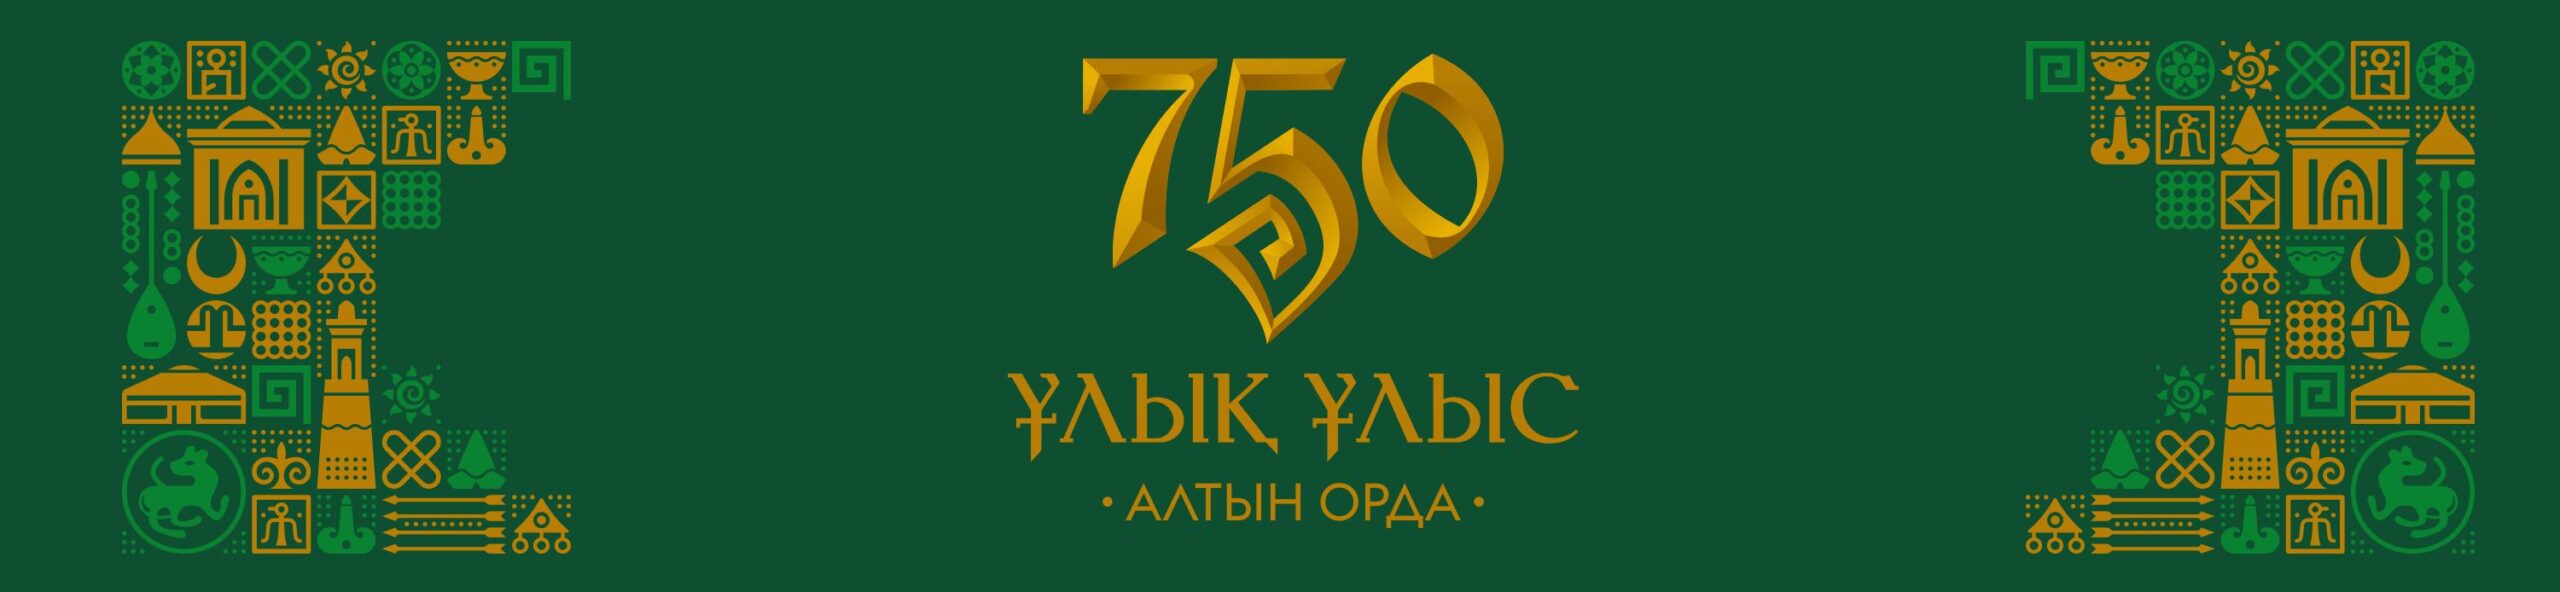 Брендбук празднования 750-летия Золотой Орды